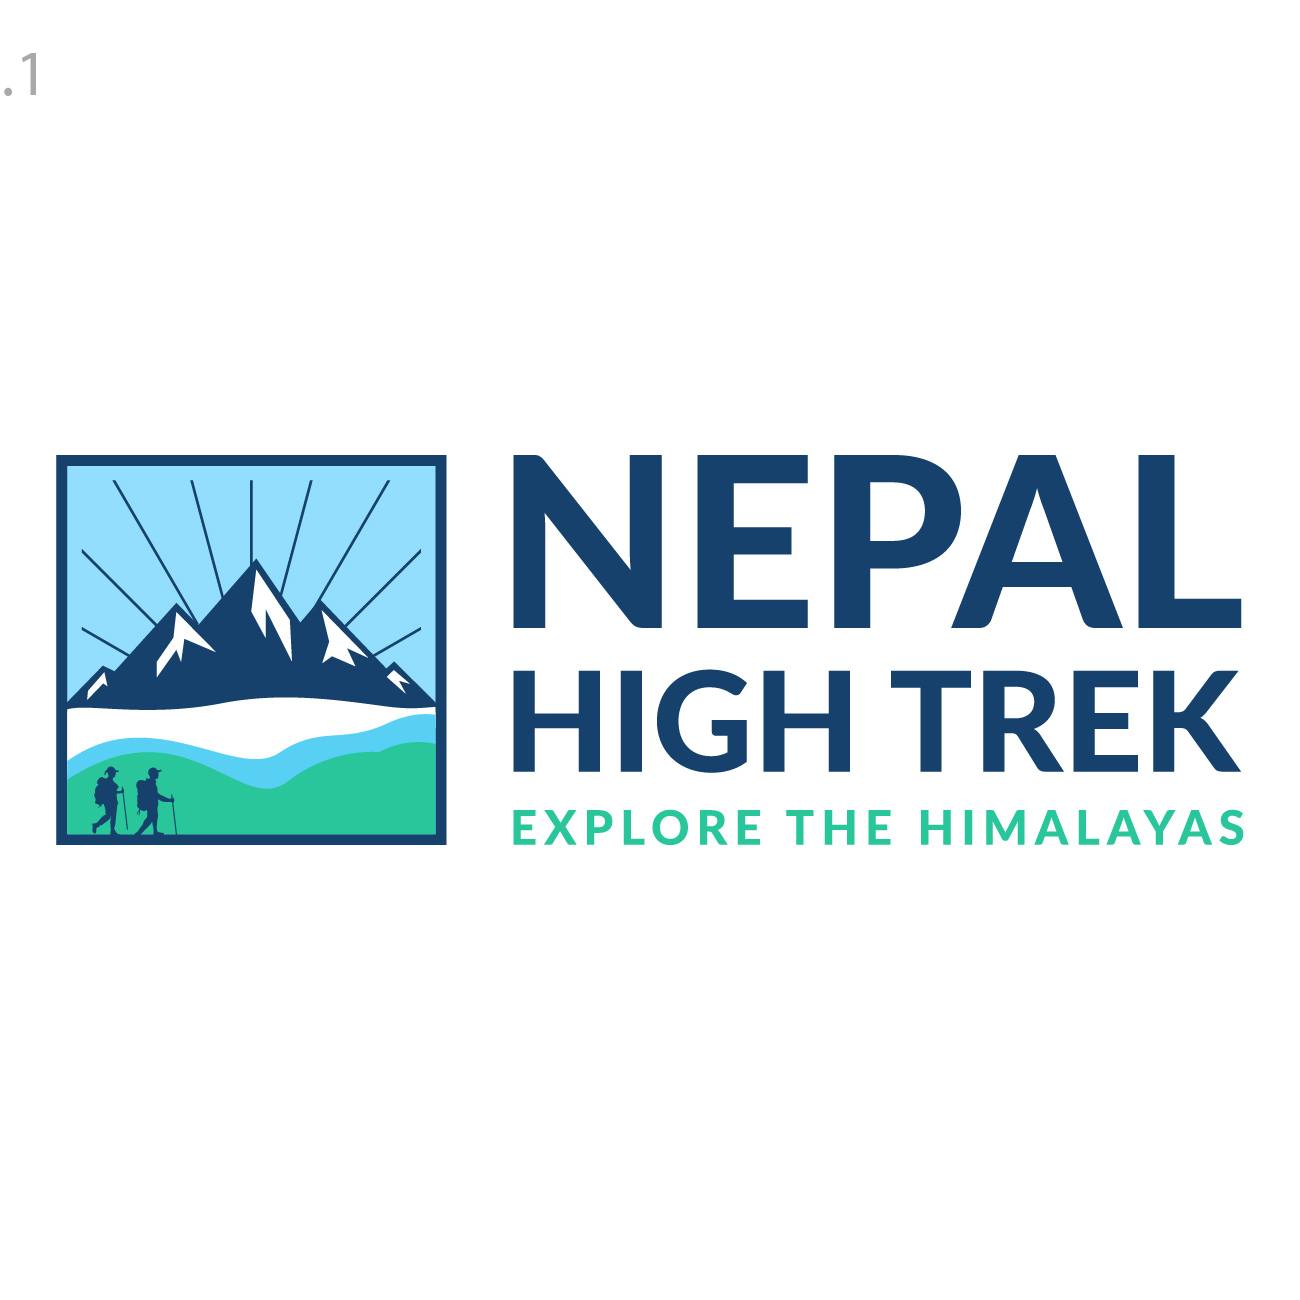 Nepal High Trek